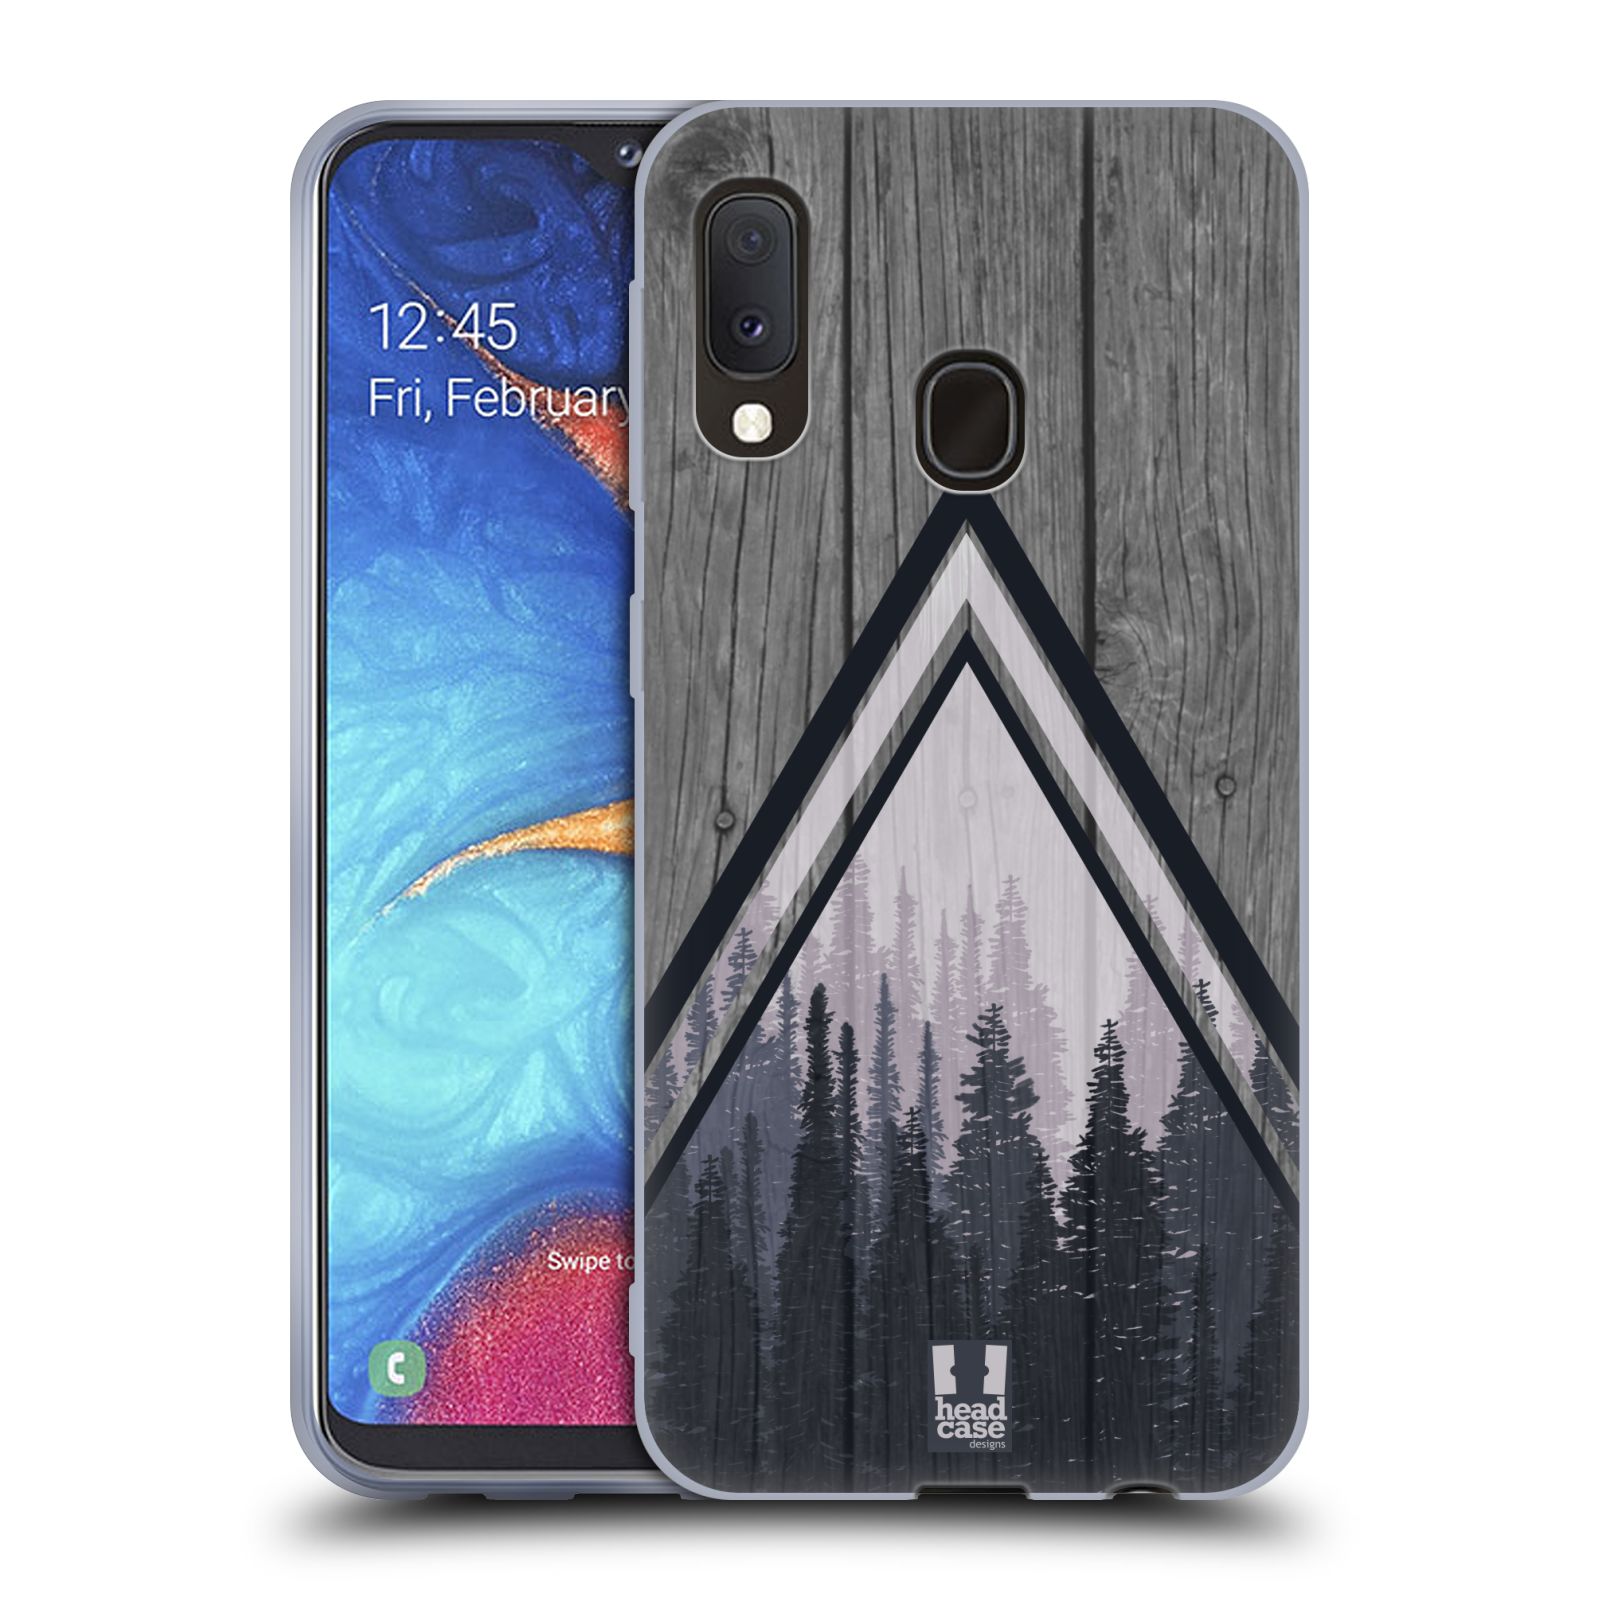 Silikonové pouzdro na mobil Samsung Galaxy A20e - Head Case - Dřevo a temný les (Silikonový kryt, obal, pouzdro na mobilní telefon Samsung Galaxy A20e A202F Dual SIM s motivem Dřevo a temný les)